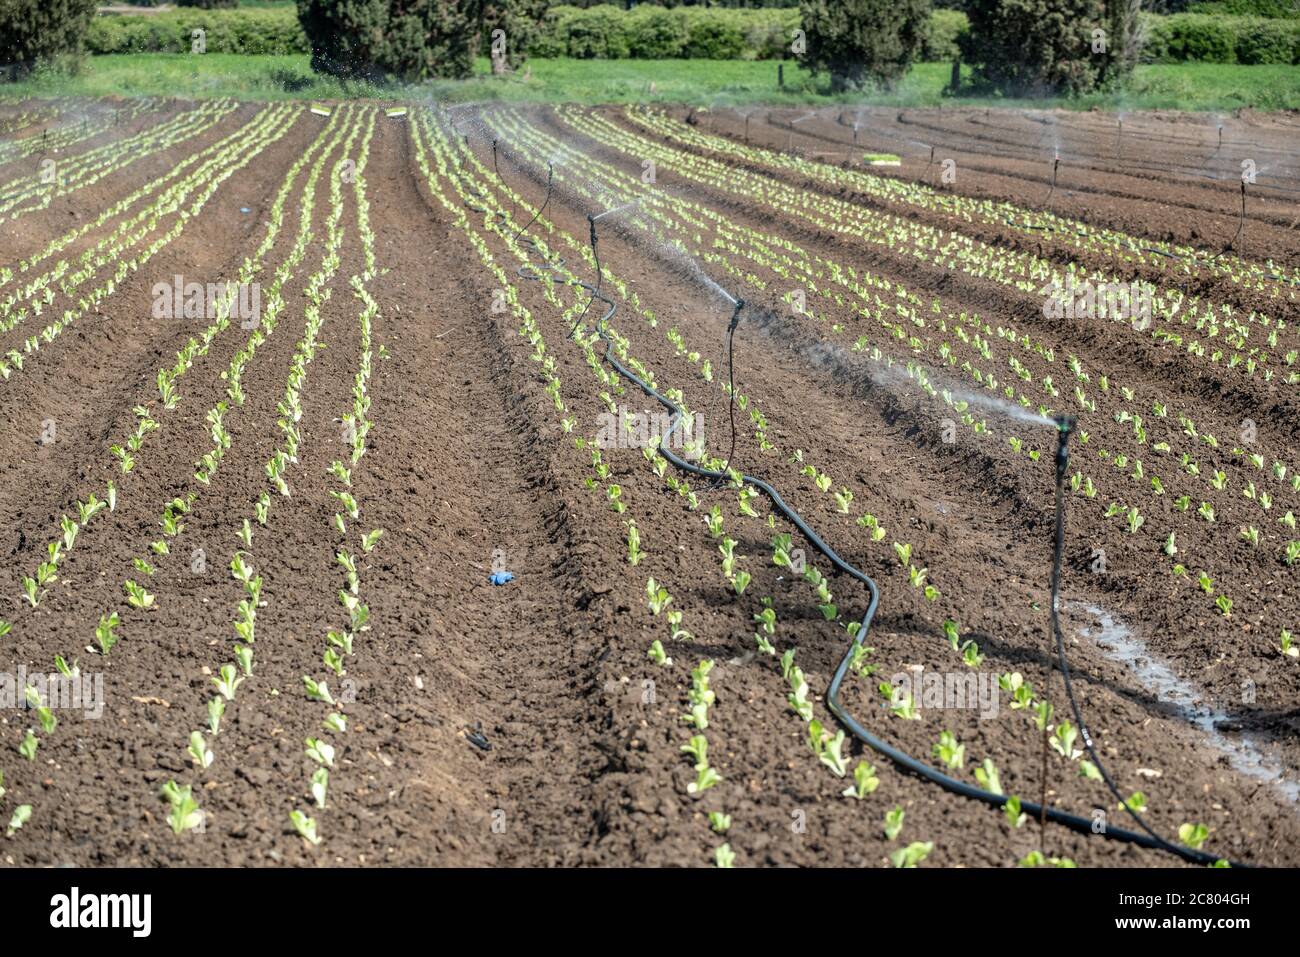 Gli sprinkler vengono utilizzati per irrigare giovani piantine in un campo agricolo. Fotografato in Israele in primavera, aprile Foto Stock